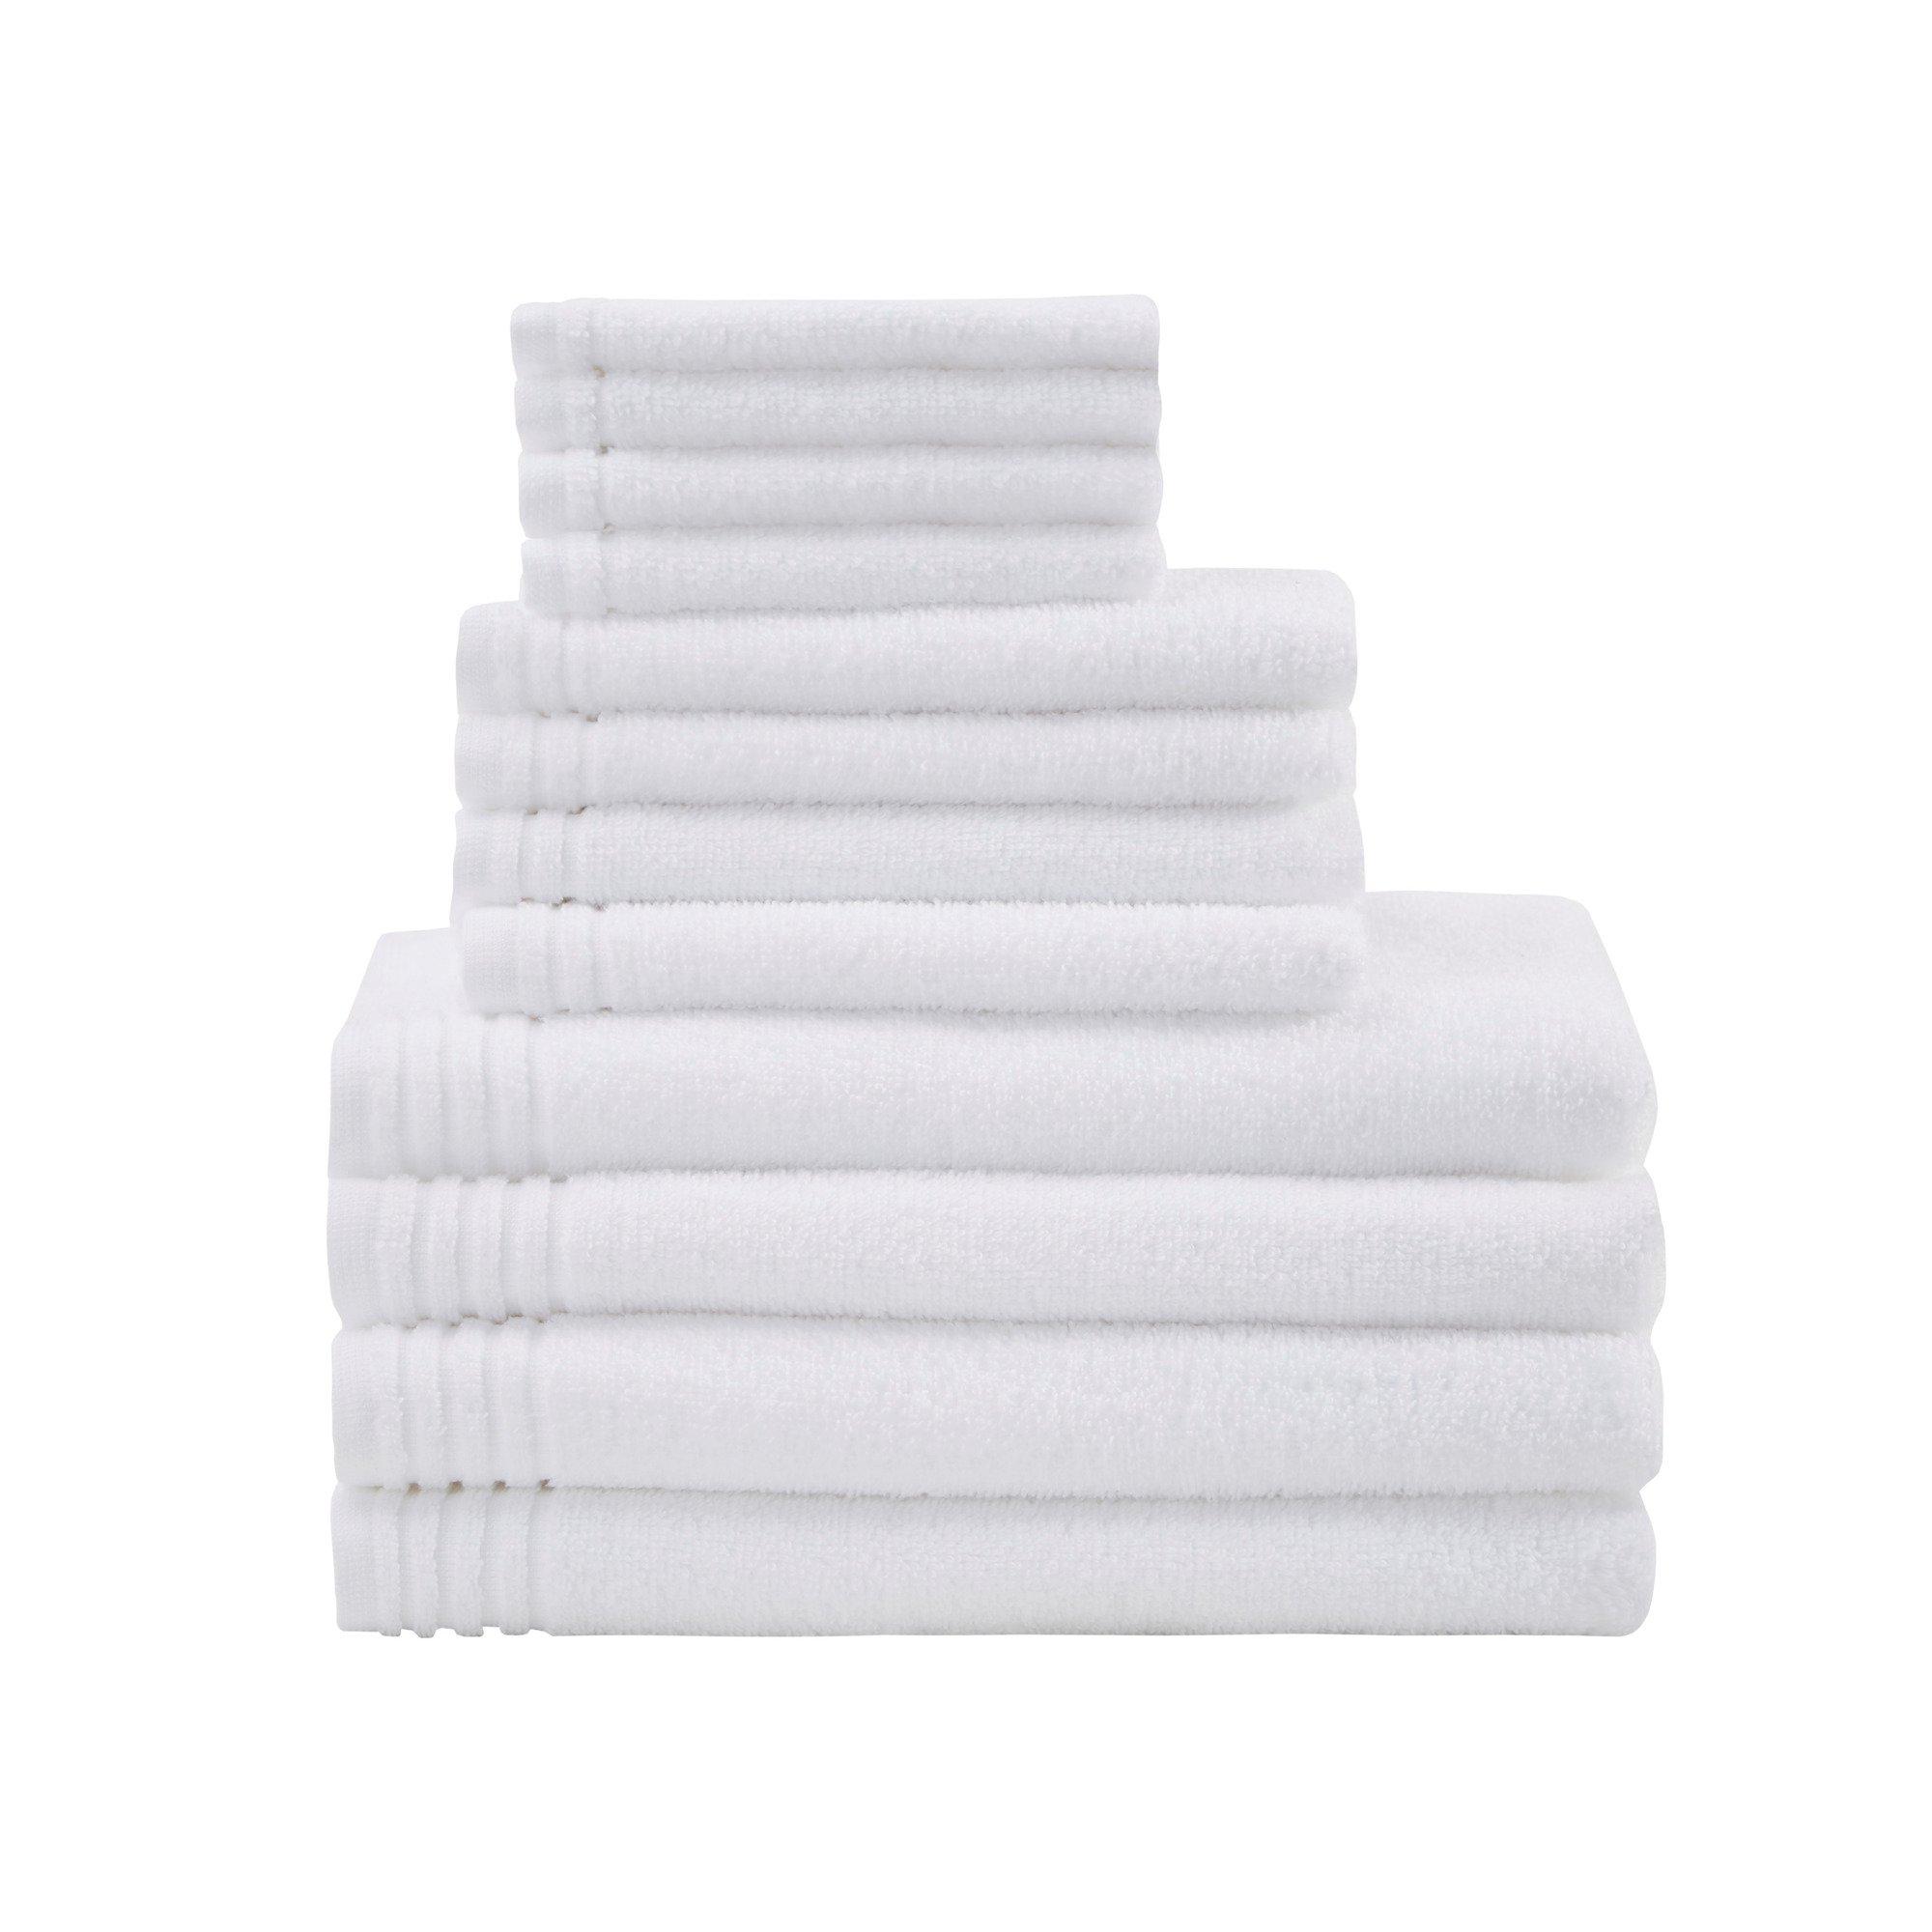 510 Design 100% Cotton Quick Dry 12 Piece Bath Towel Set